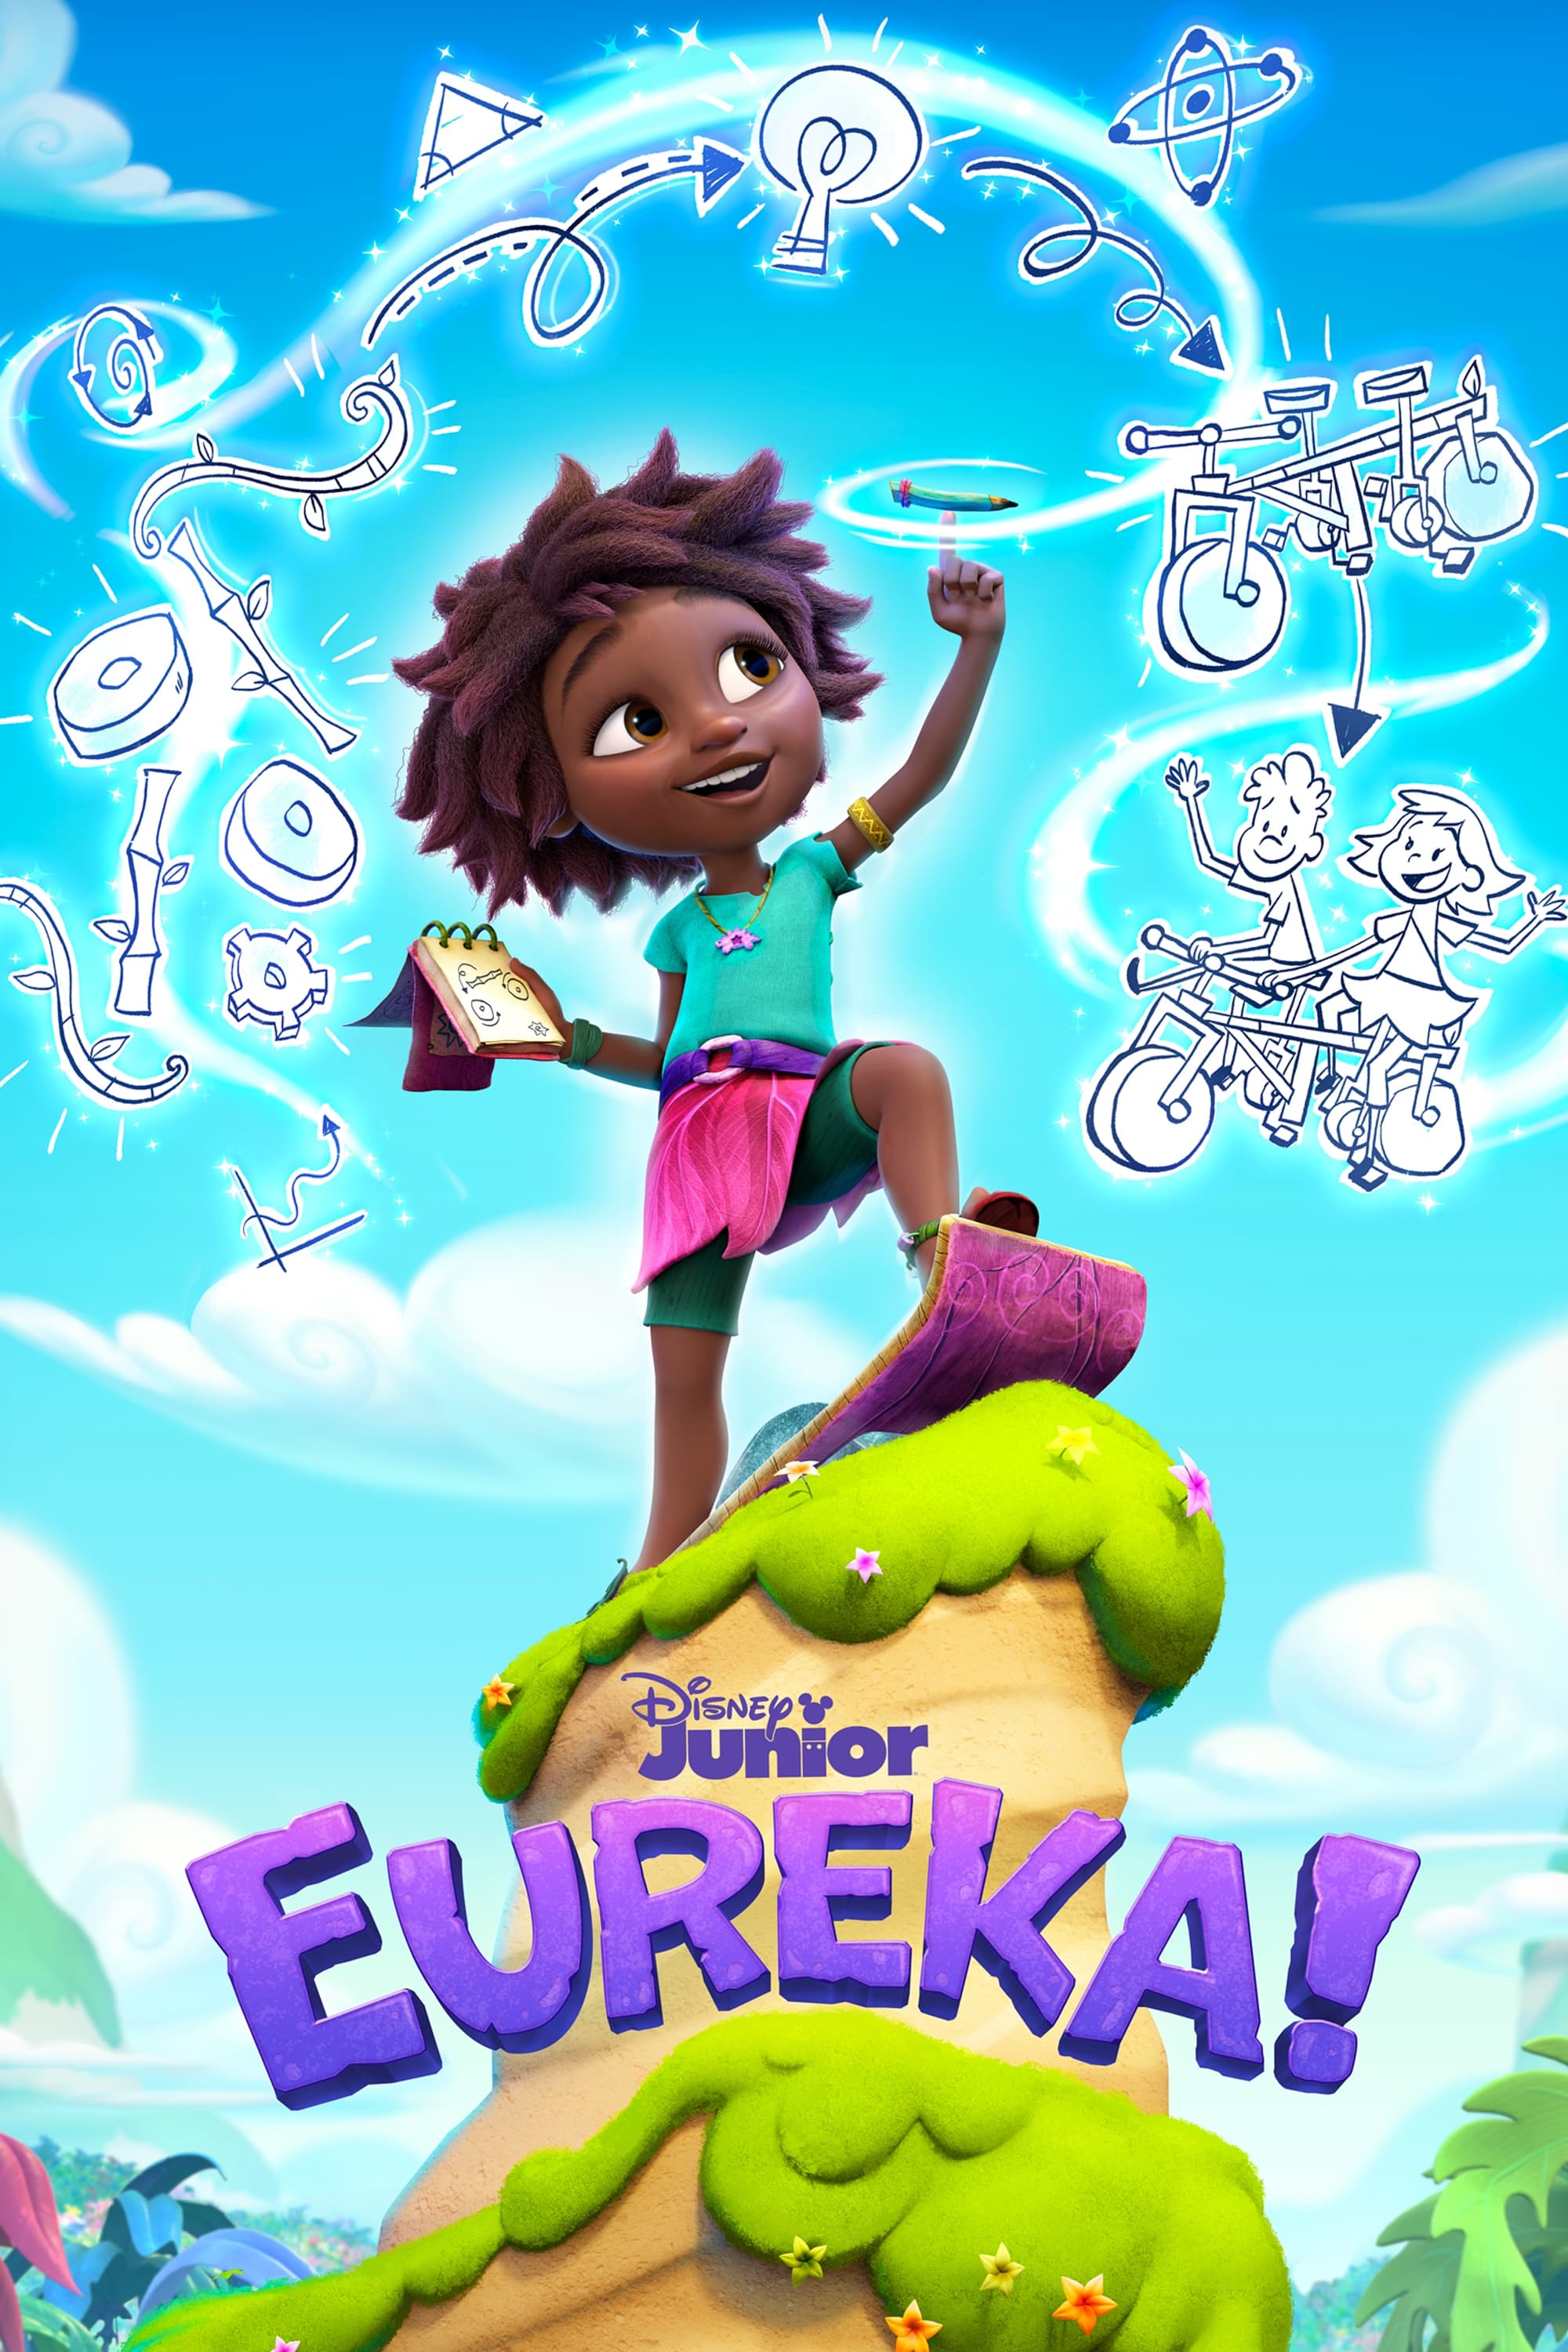 TV ratings for Eureka! in Portugal. Disney Junior TV series